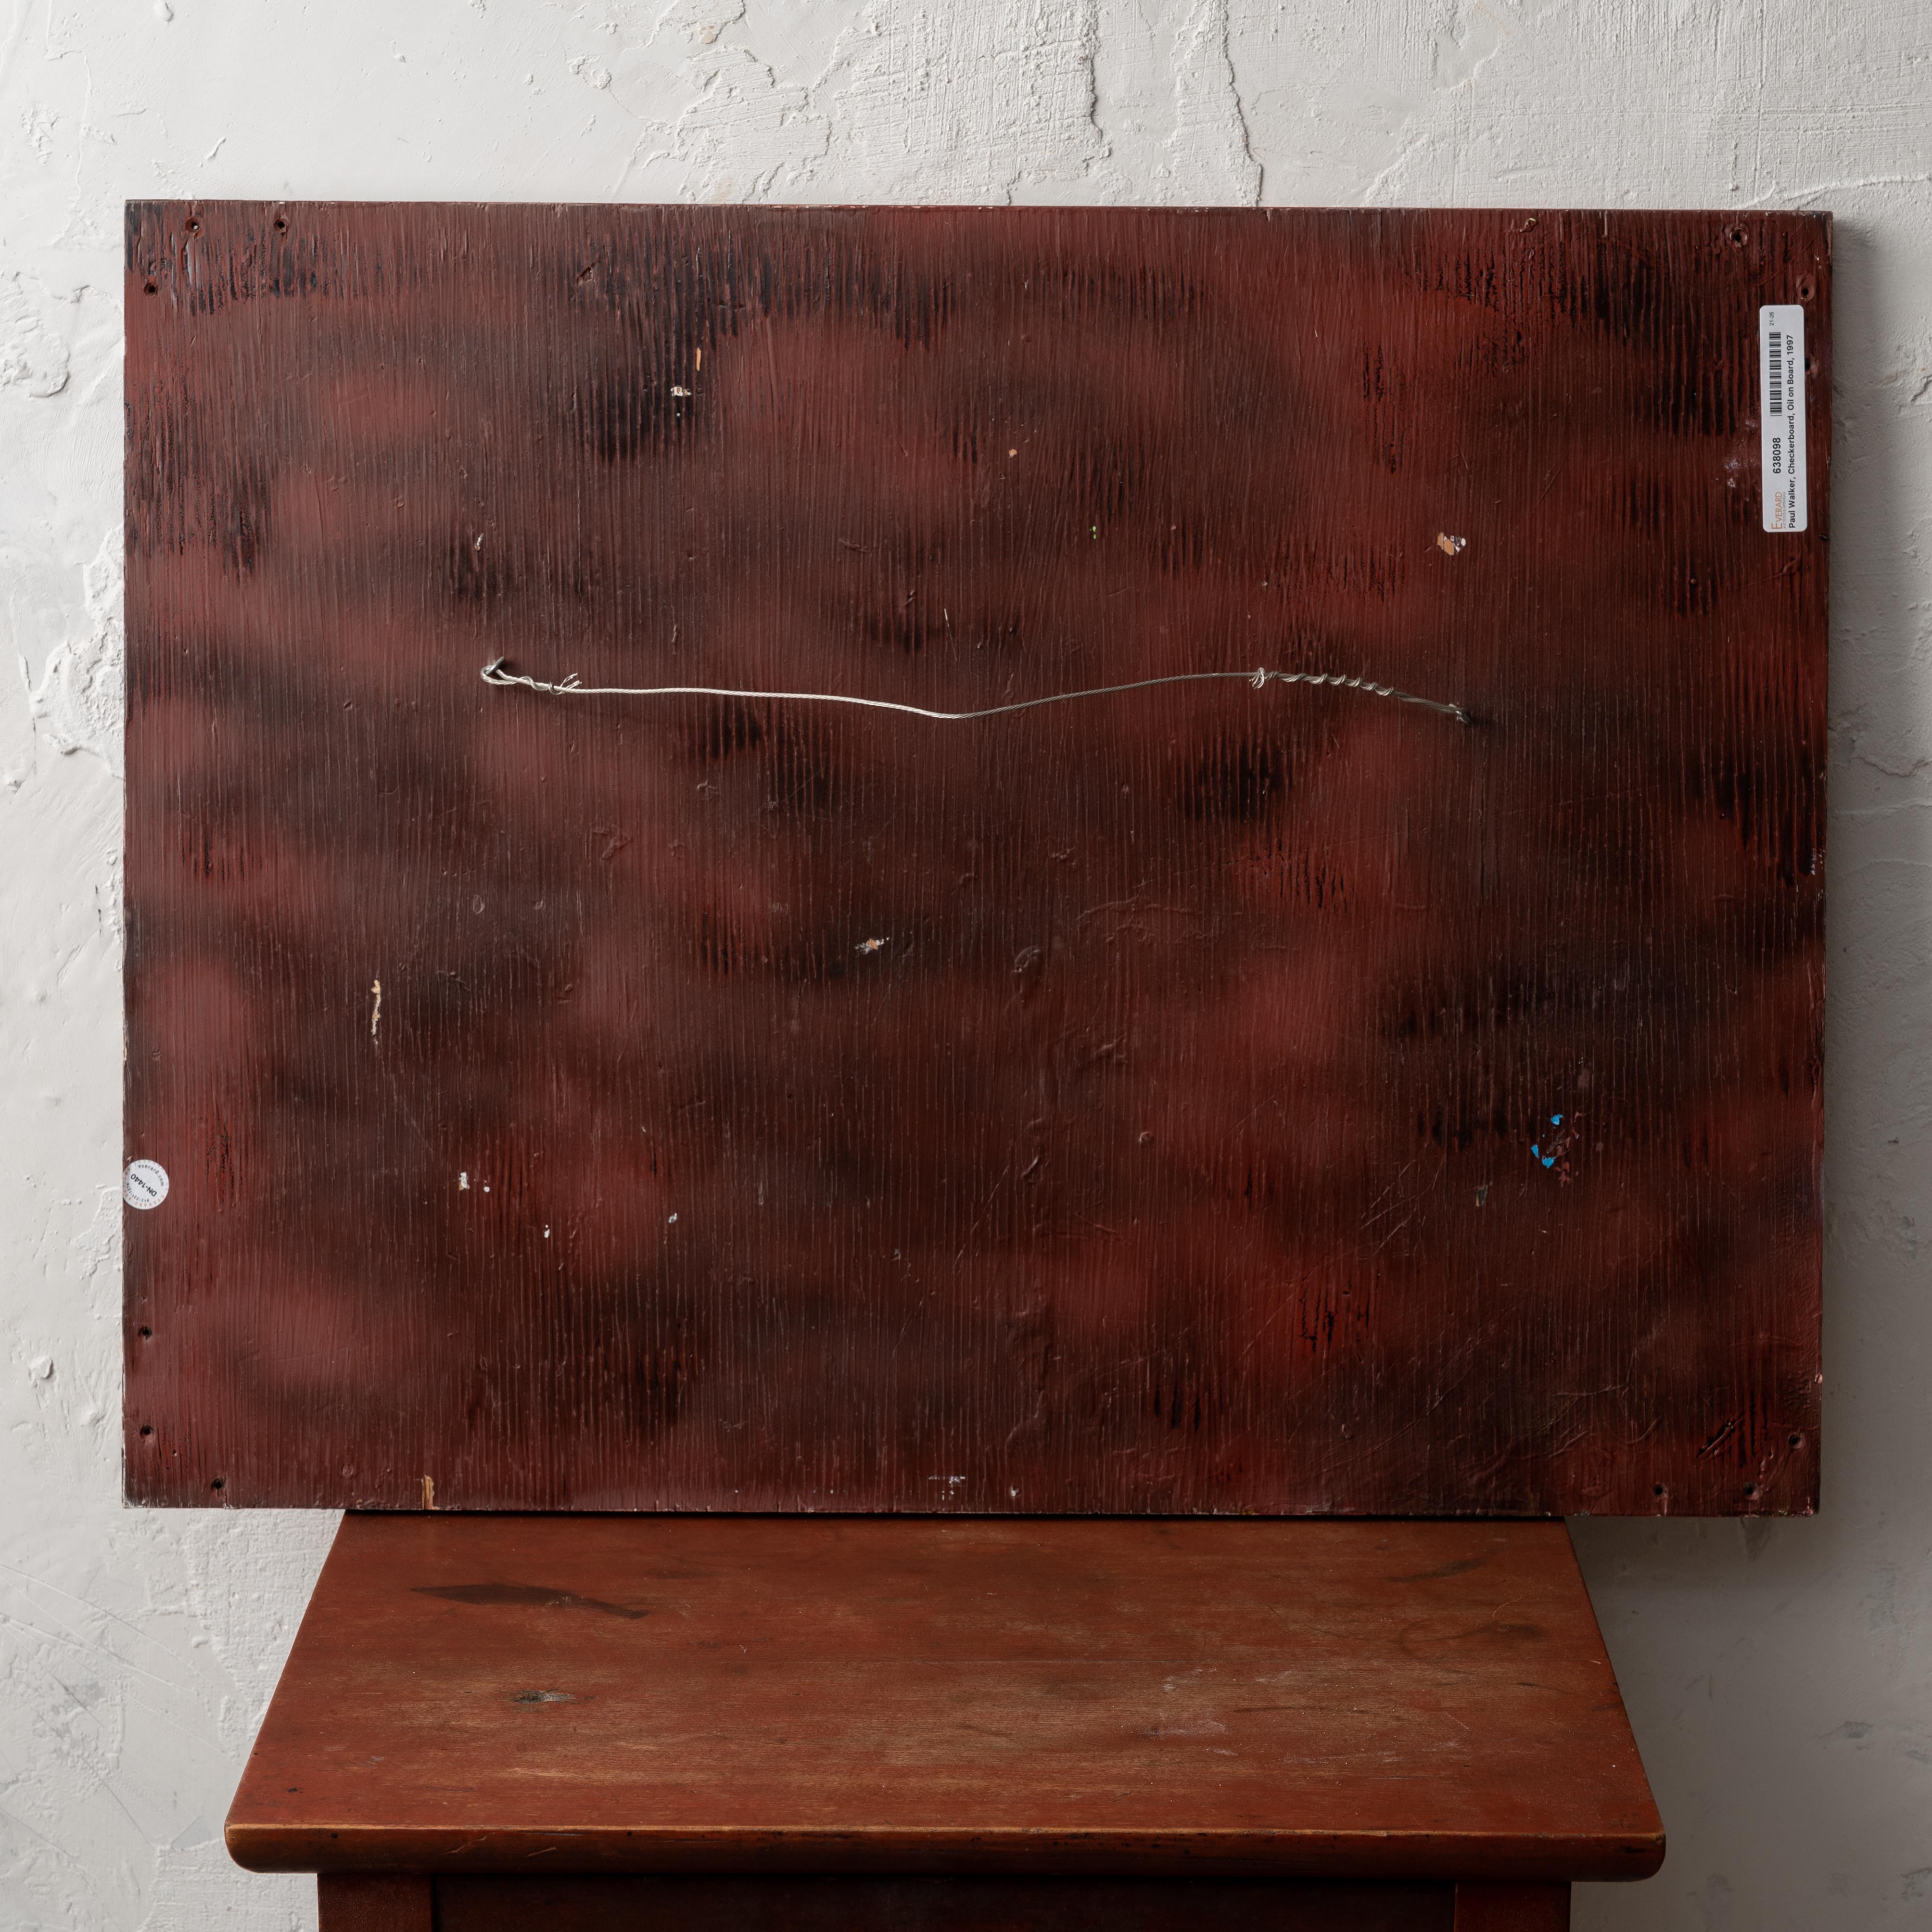 Wood Paul Walker - Outsider Art Checkerboard For Sale